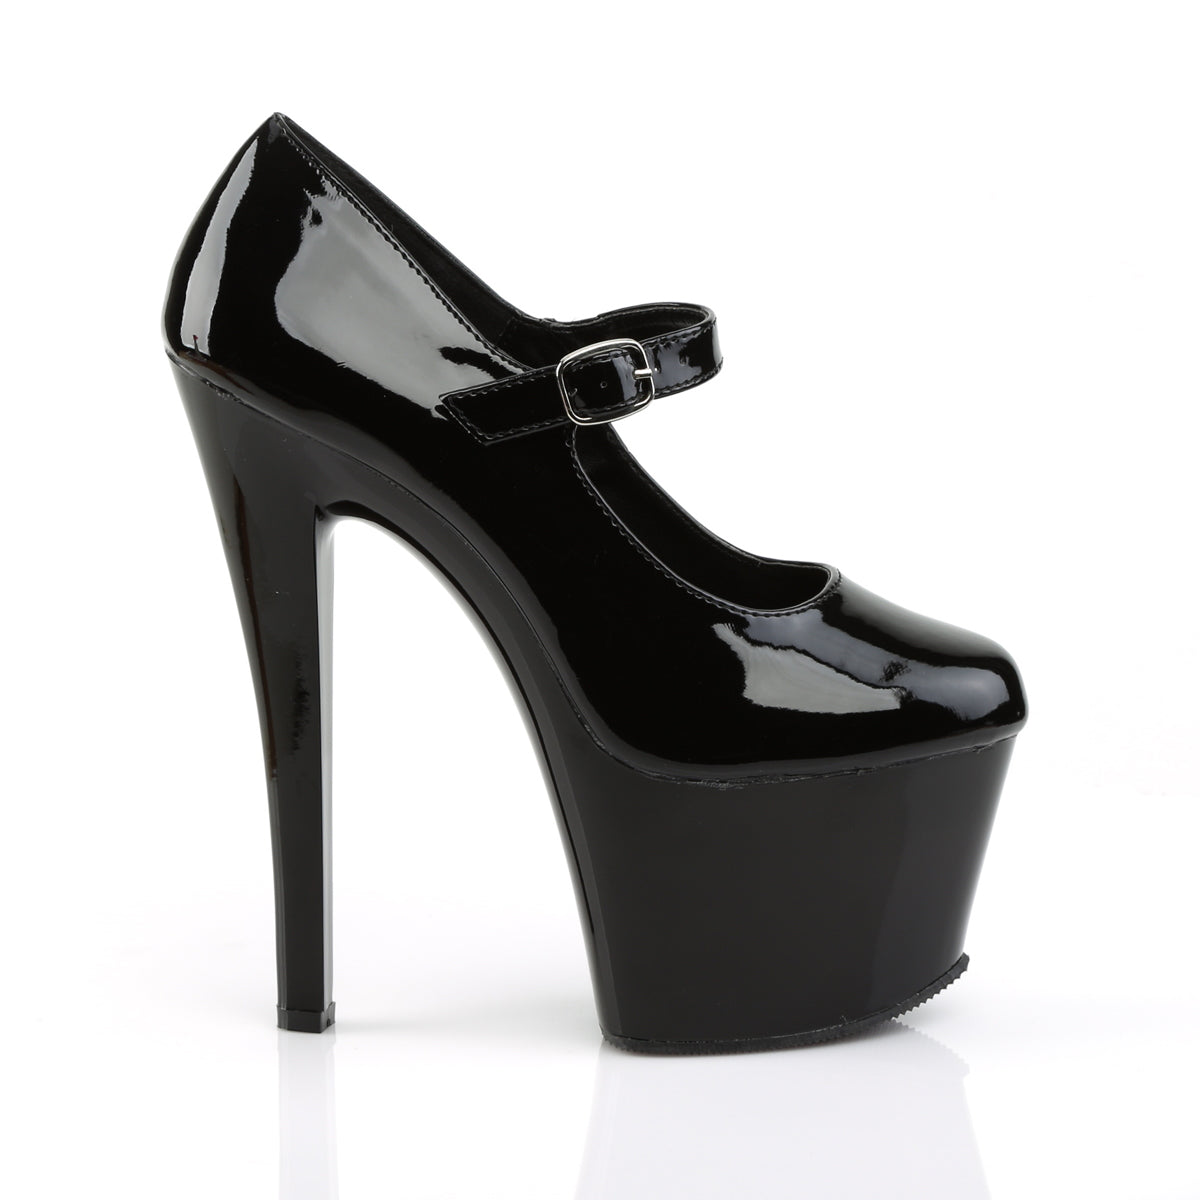 SKY-387 Pleaser Black Patent Platform Shoes [Pole Dancing Shoes]